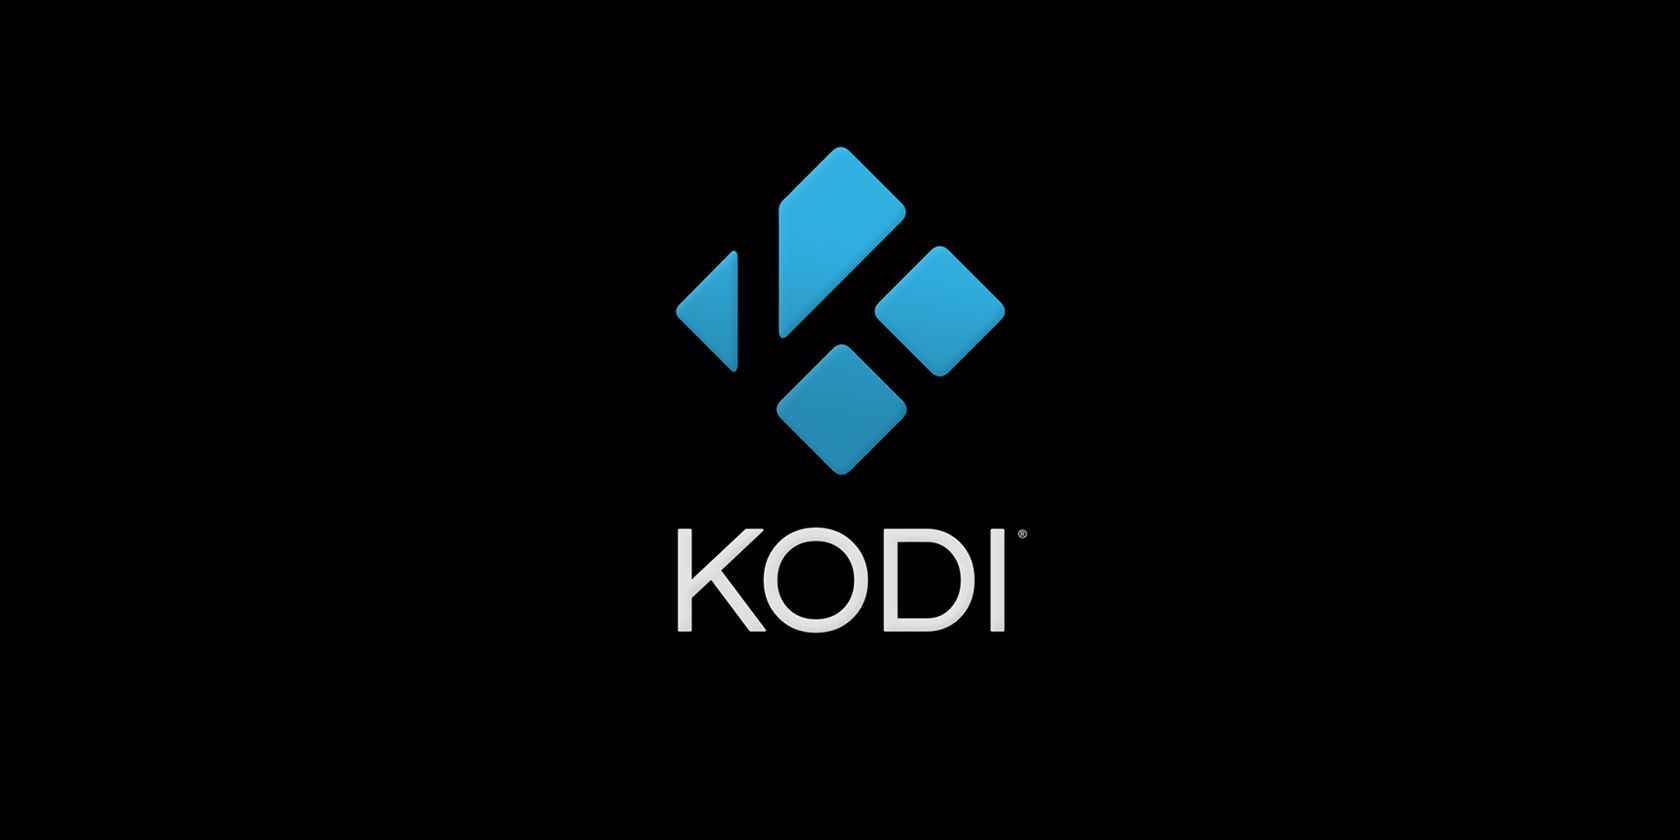 Kodi logo on a black background